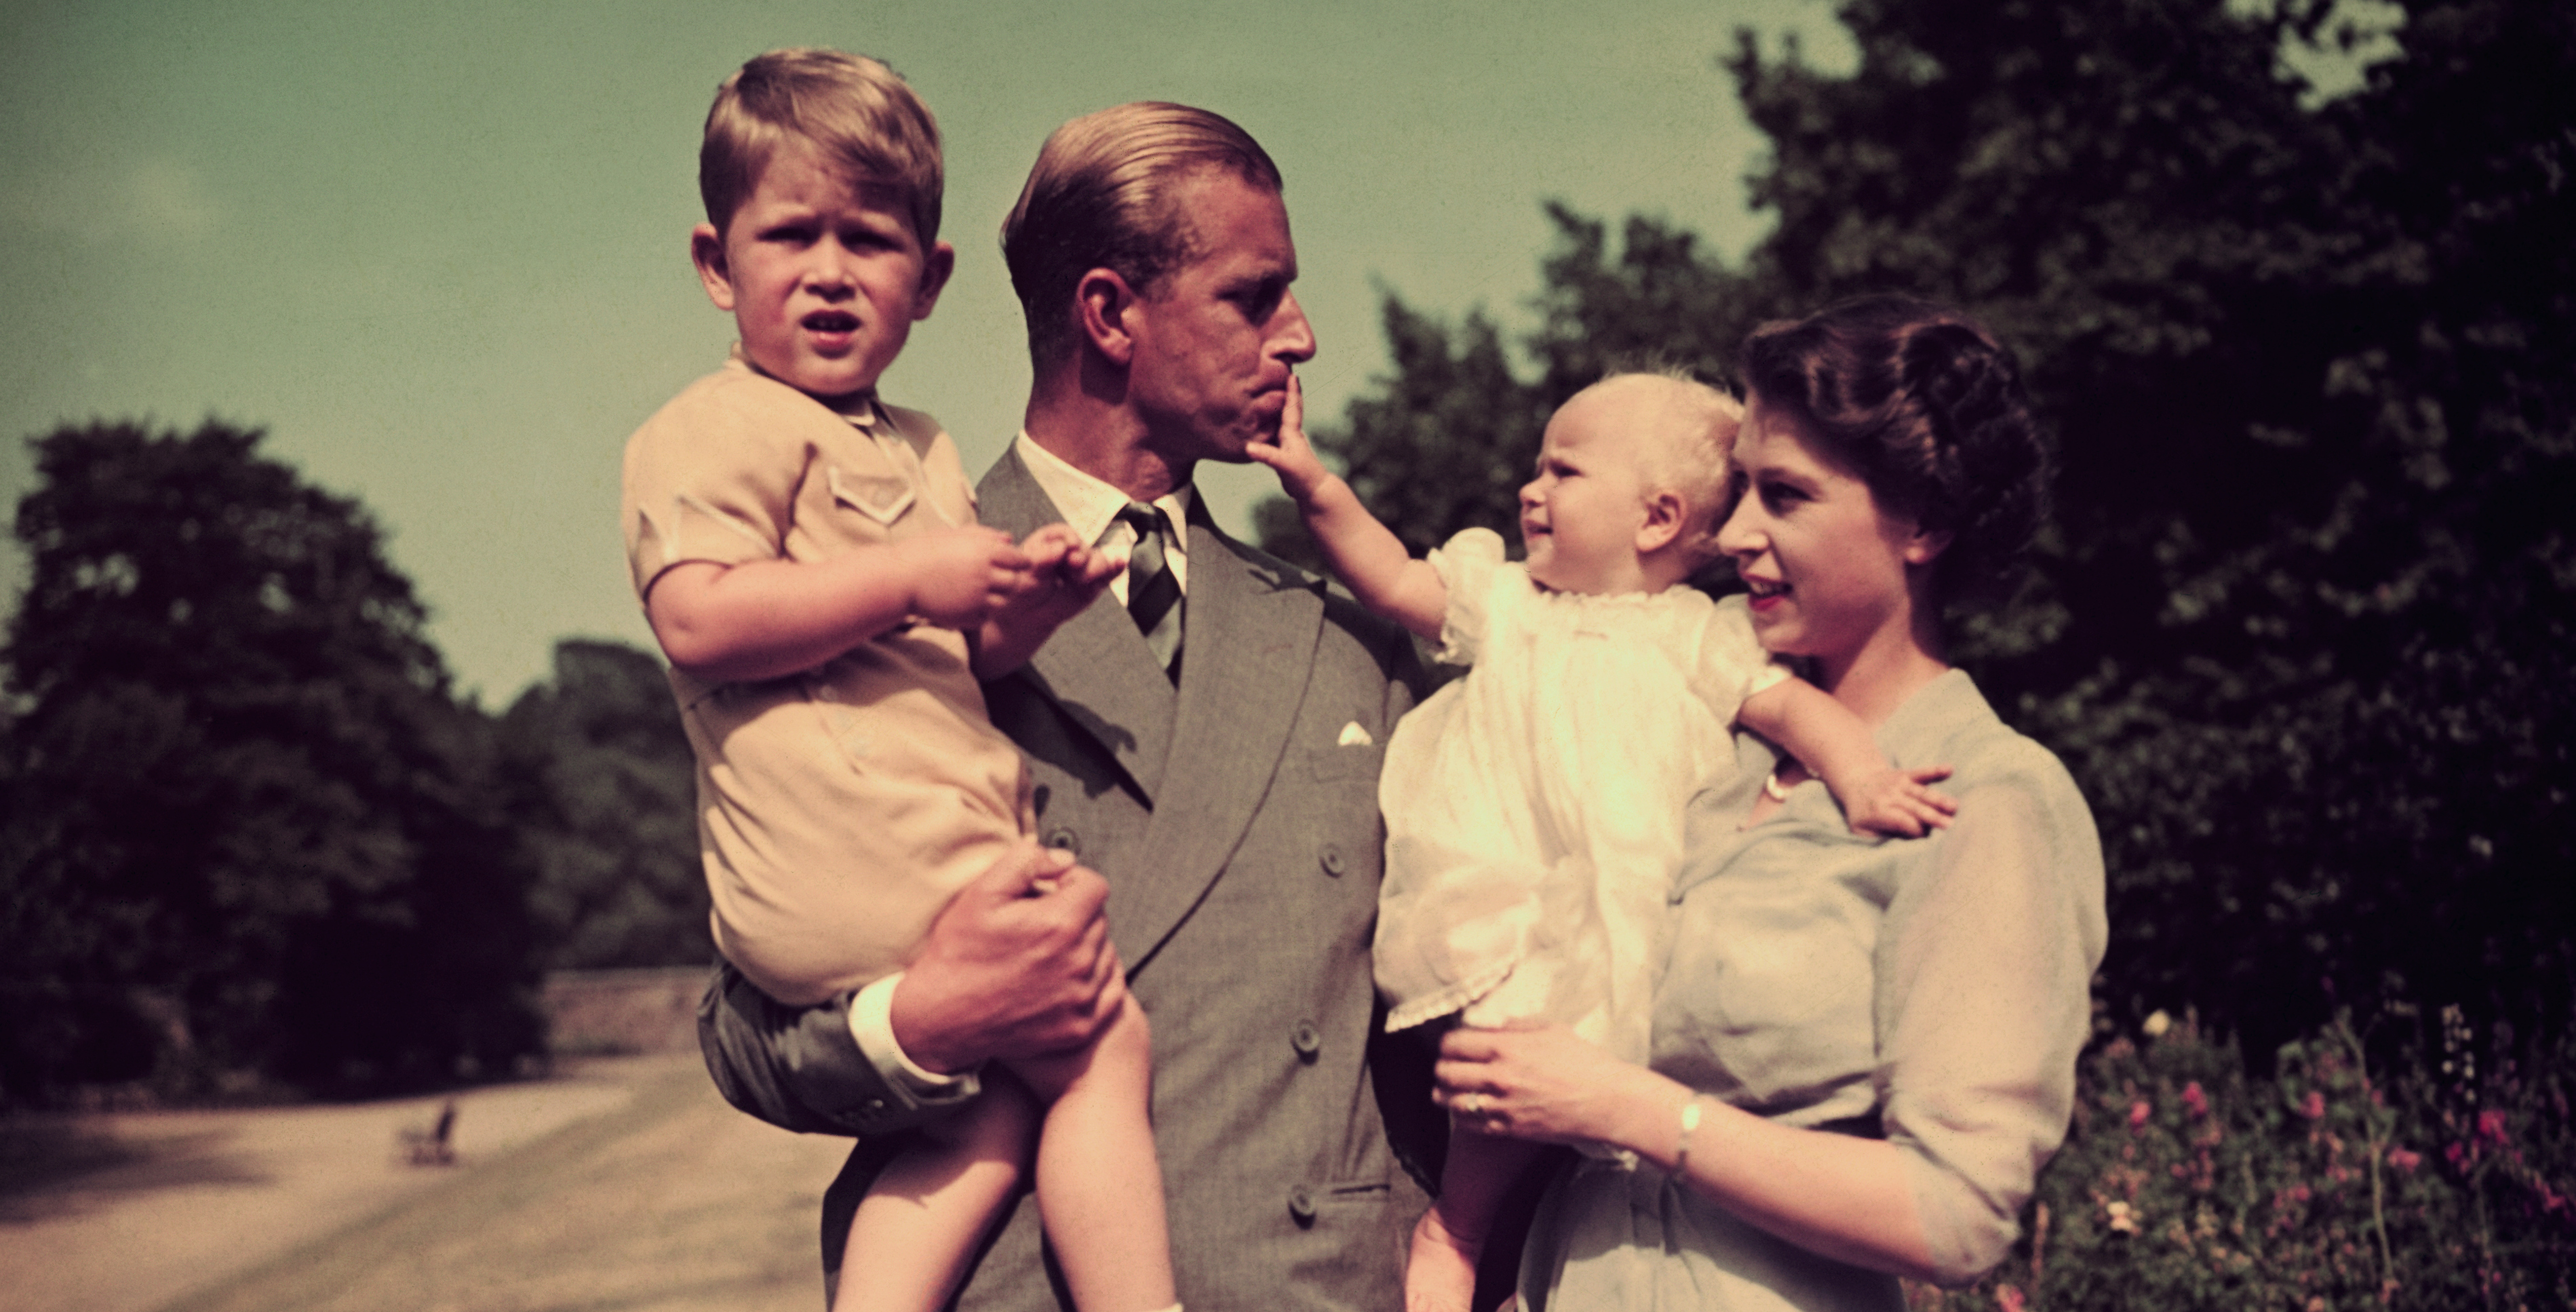 El príncipe Felipe, esposo de la reina Isabel II, ha muerto a los 99 años de edad